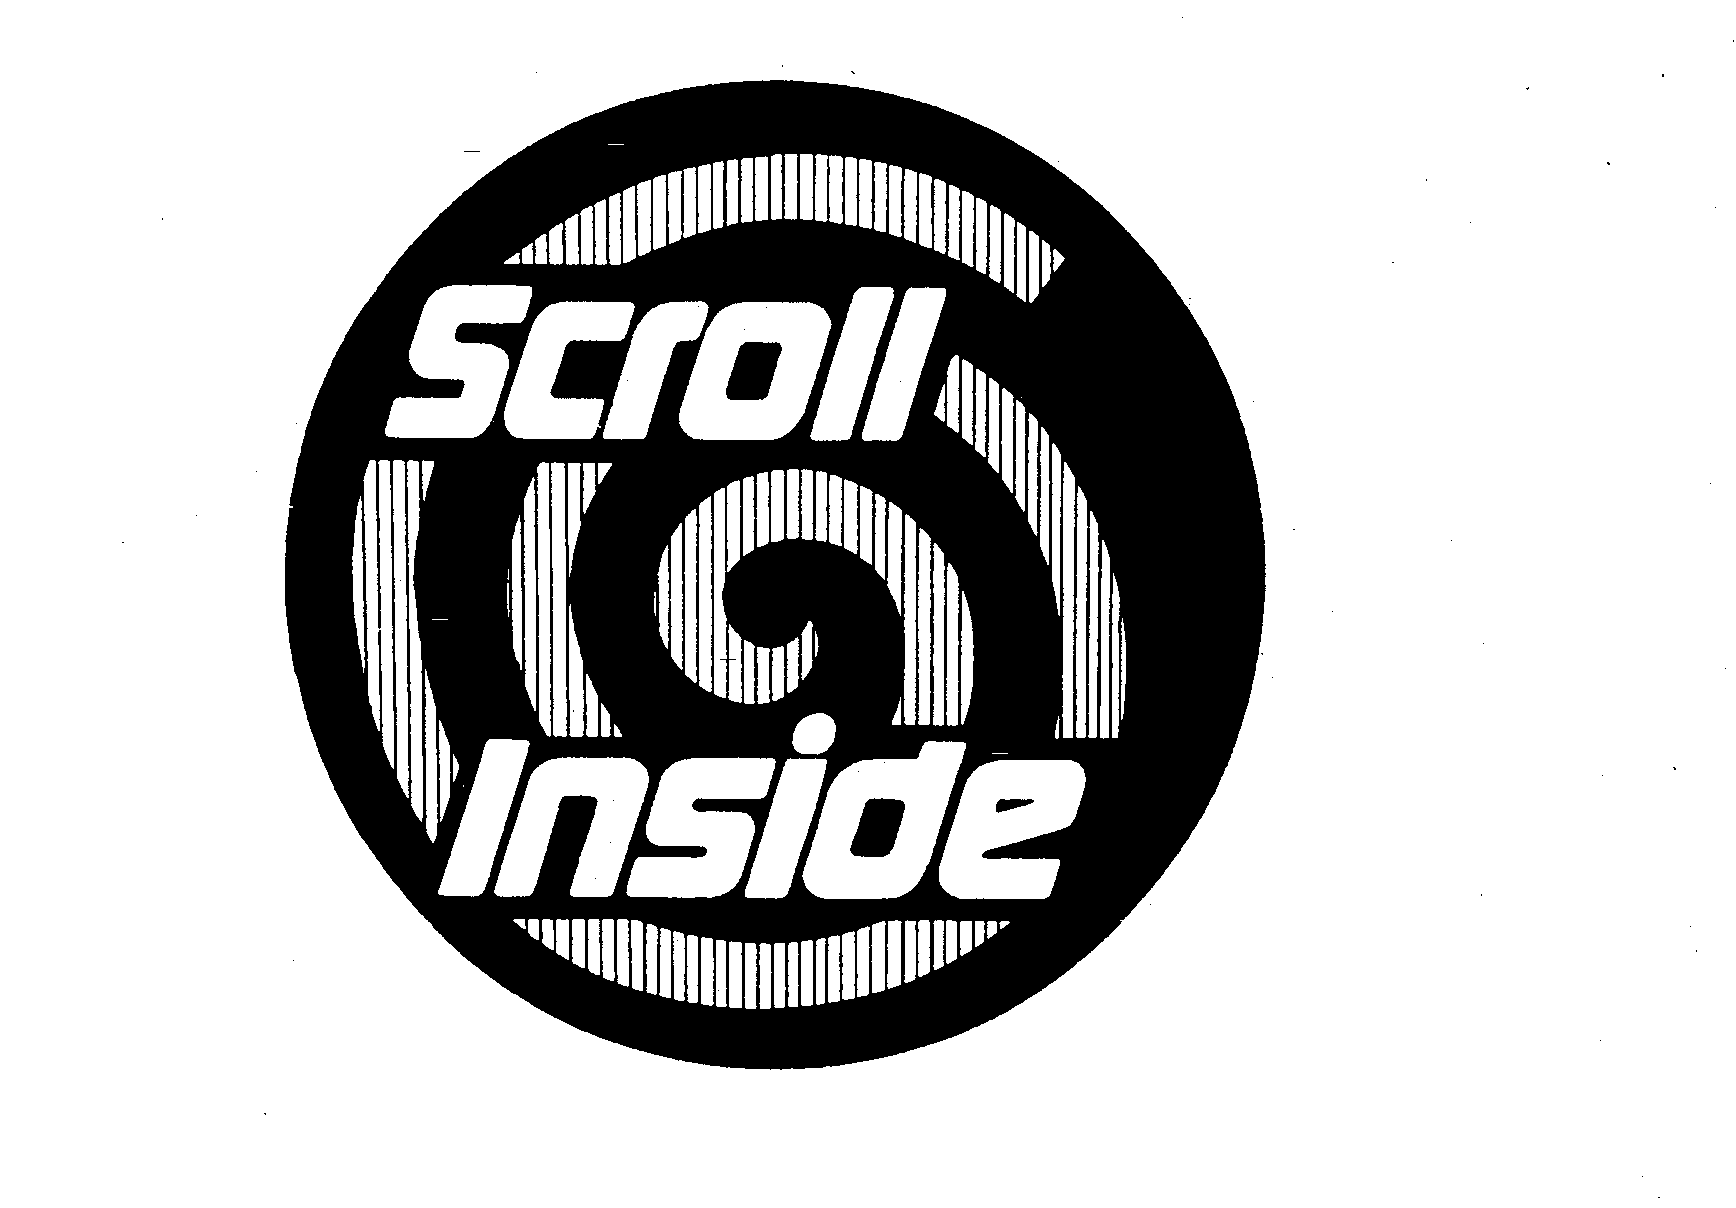  SCROLL INSIDE